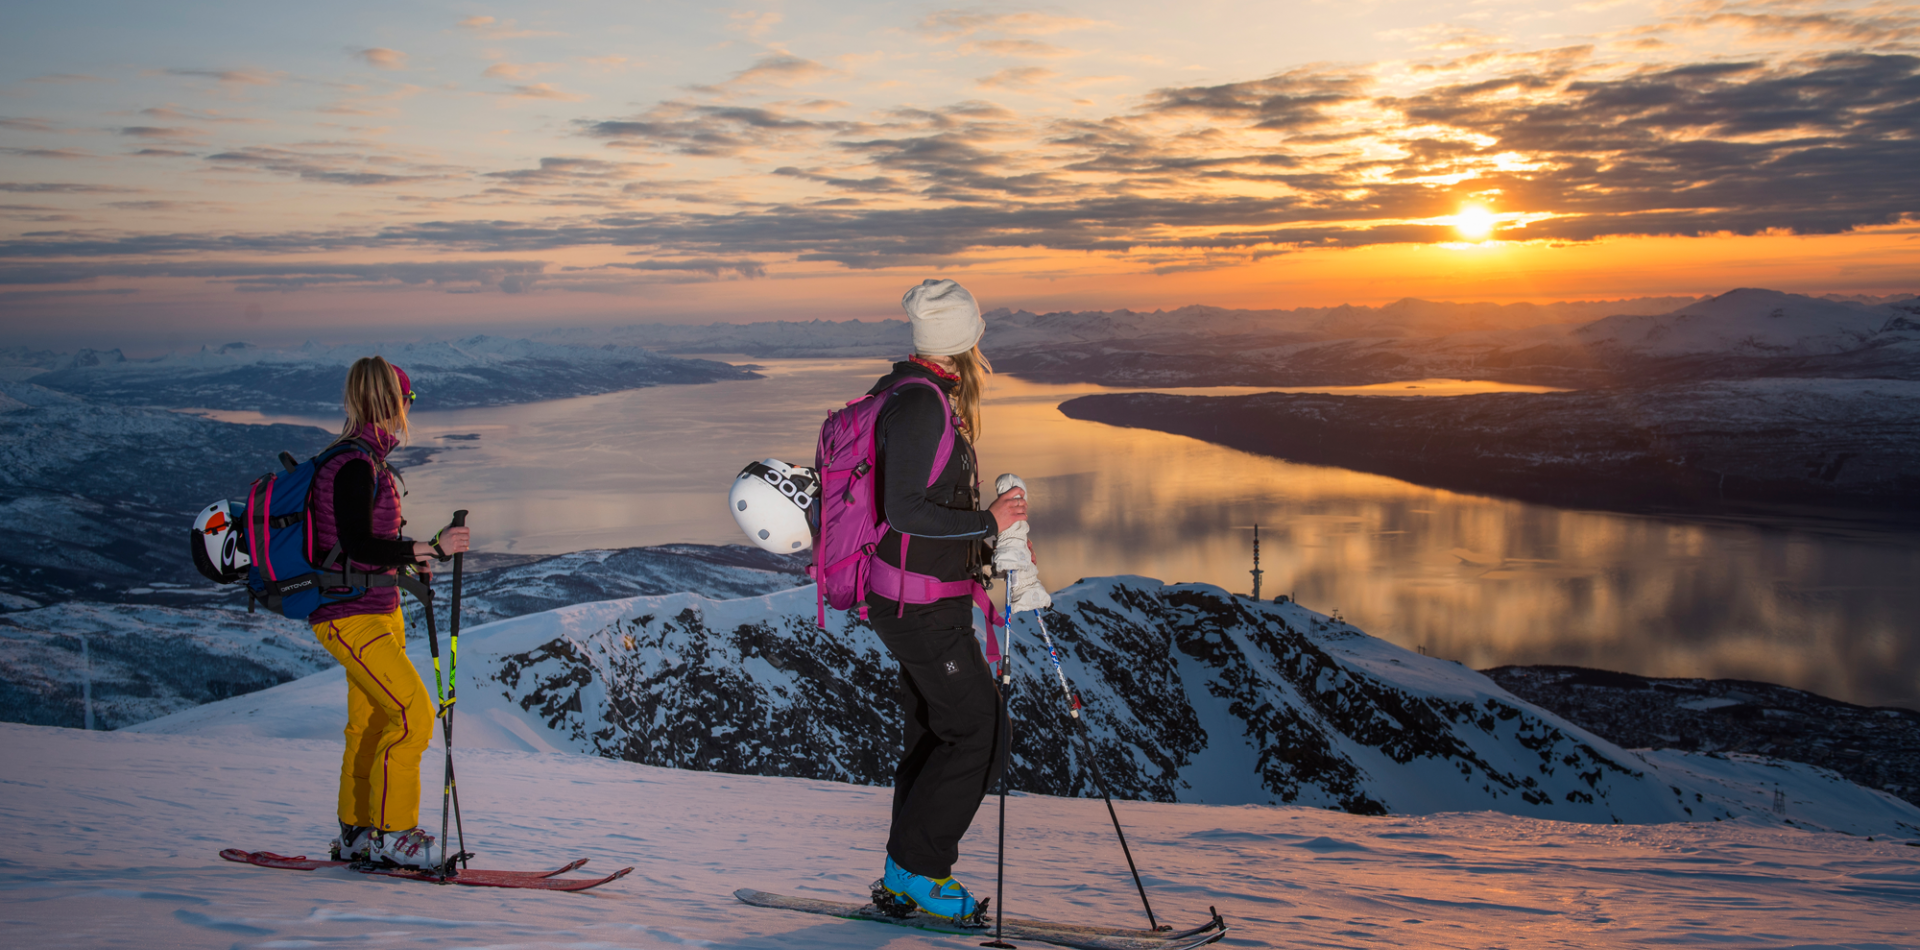 Ski touring in Narvik